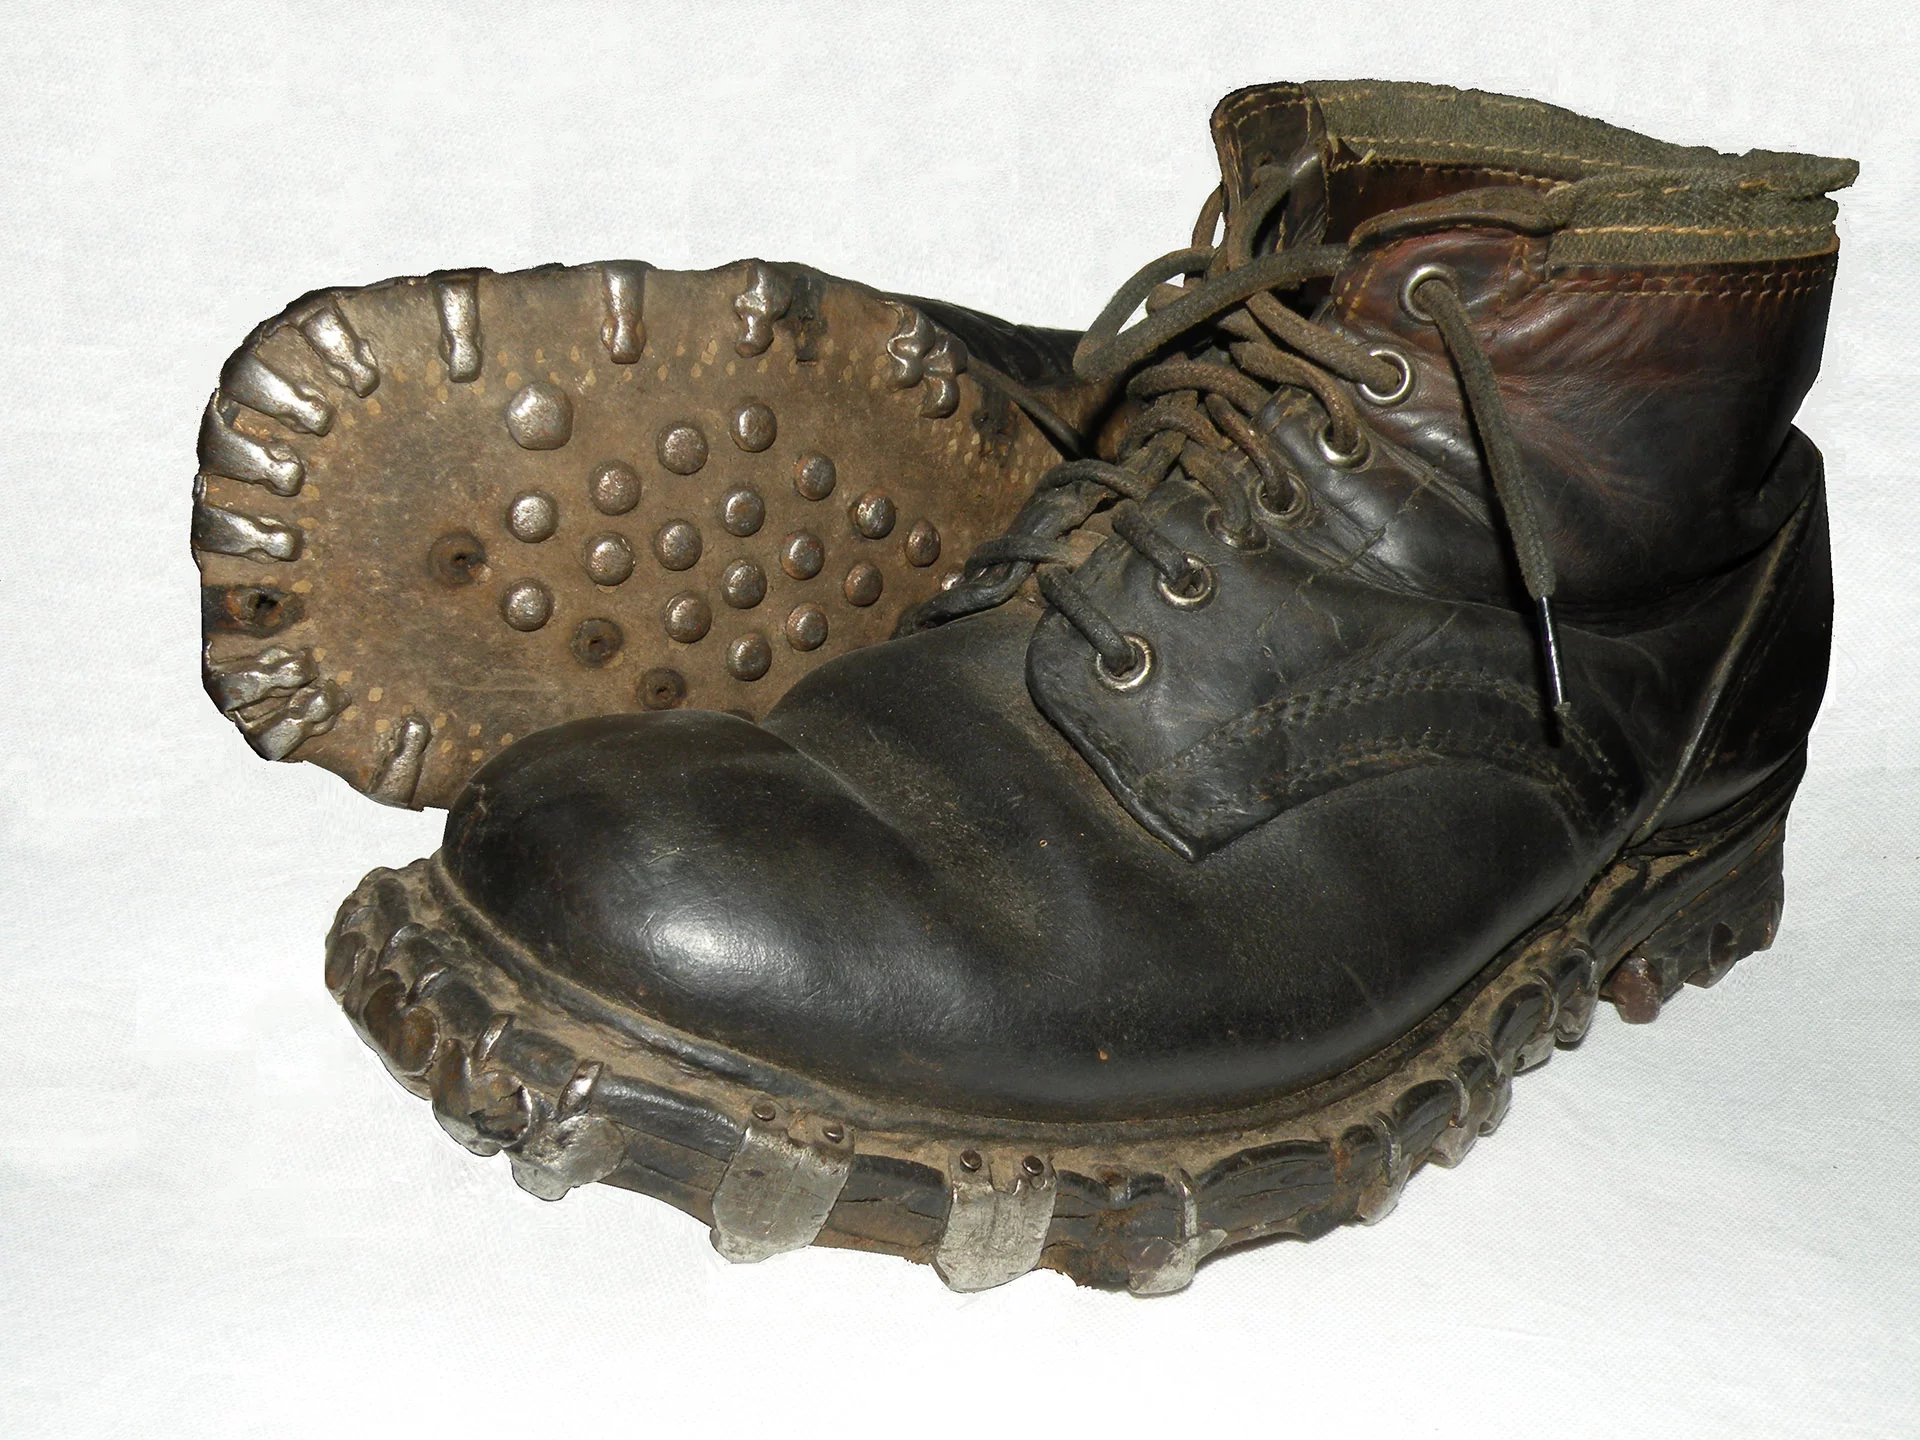 Tyskerne hadde noen forferdelige sko med jernknaster. Når man marsjerte gav disse støvlene en veldig larm. Verst var Gebirgsjägerne - de tyske alpejegerne.  Etter krigen måtte det legges nye gulv i hus som de hadde oppholdt seg i.  Skoene hadde bokstavelig "spist" opp gulvplankene.